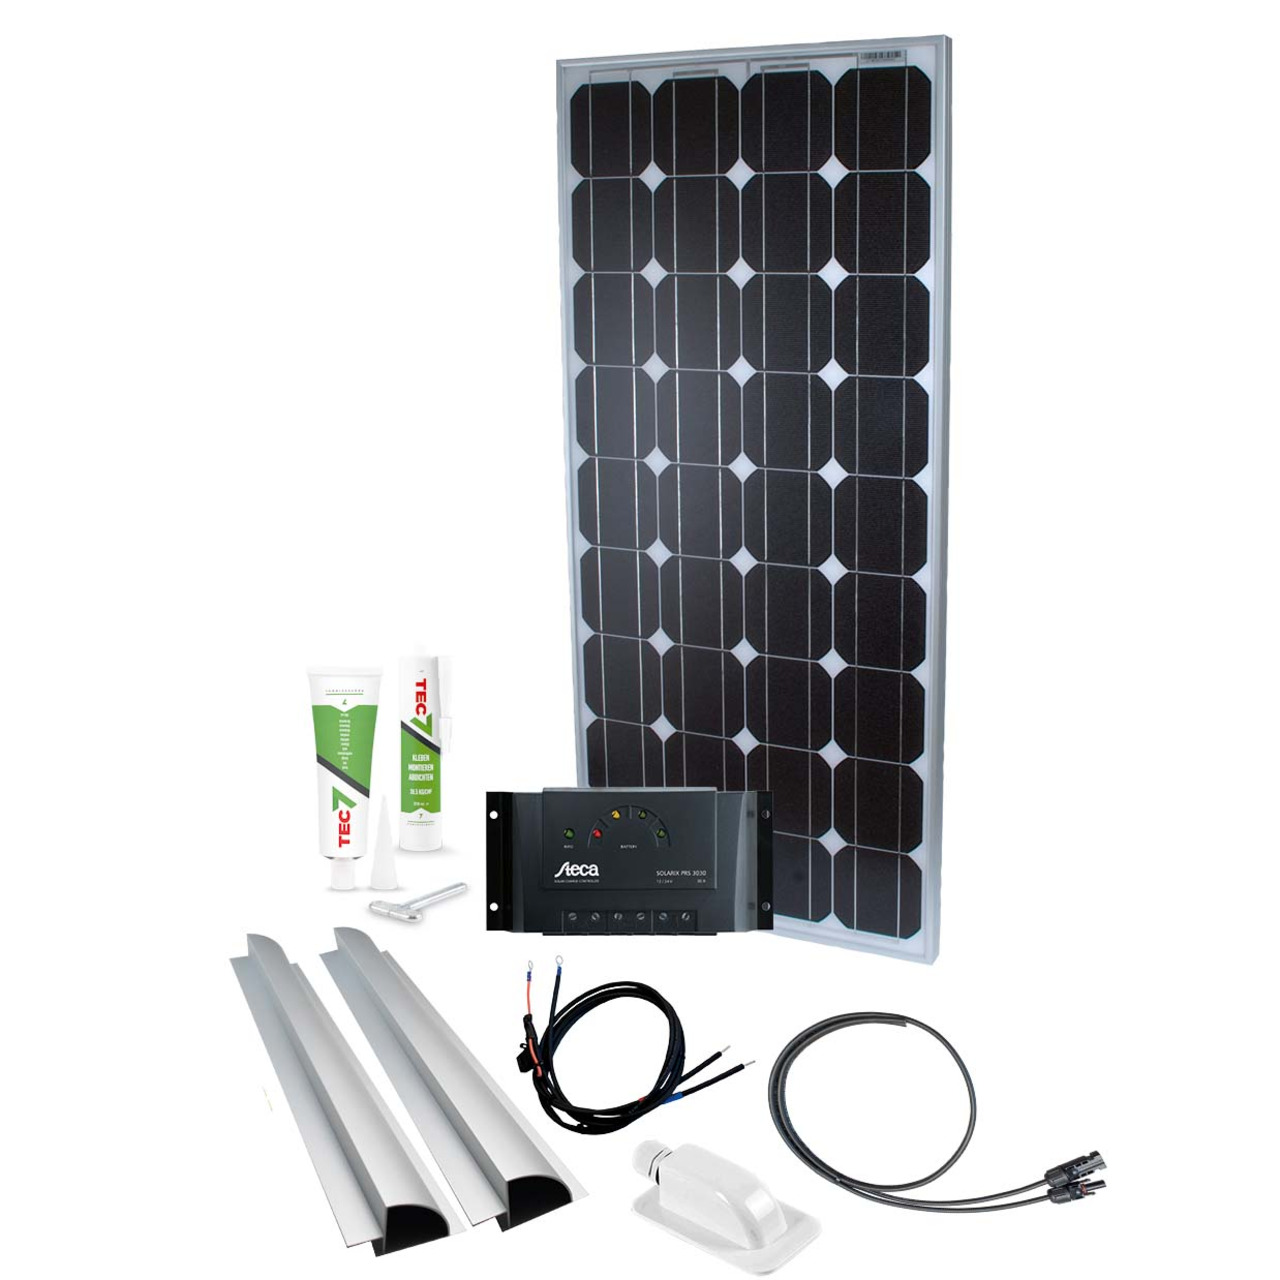 Phaesun Solar Komplett-Set Caravan Kit Base Camp One 100 W- 12 V inkl- 15 A Solarladeregler